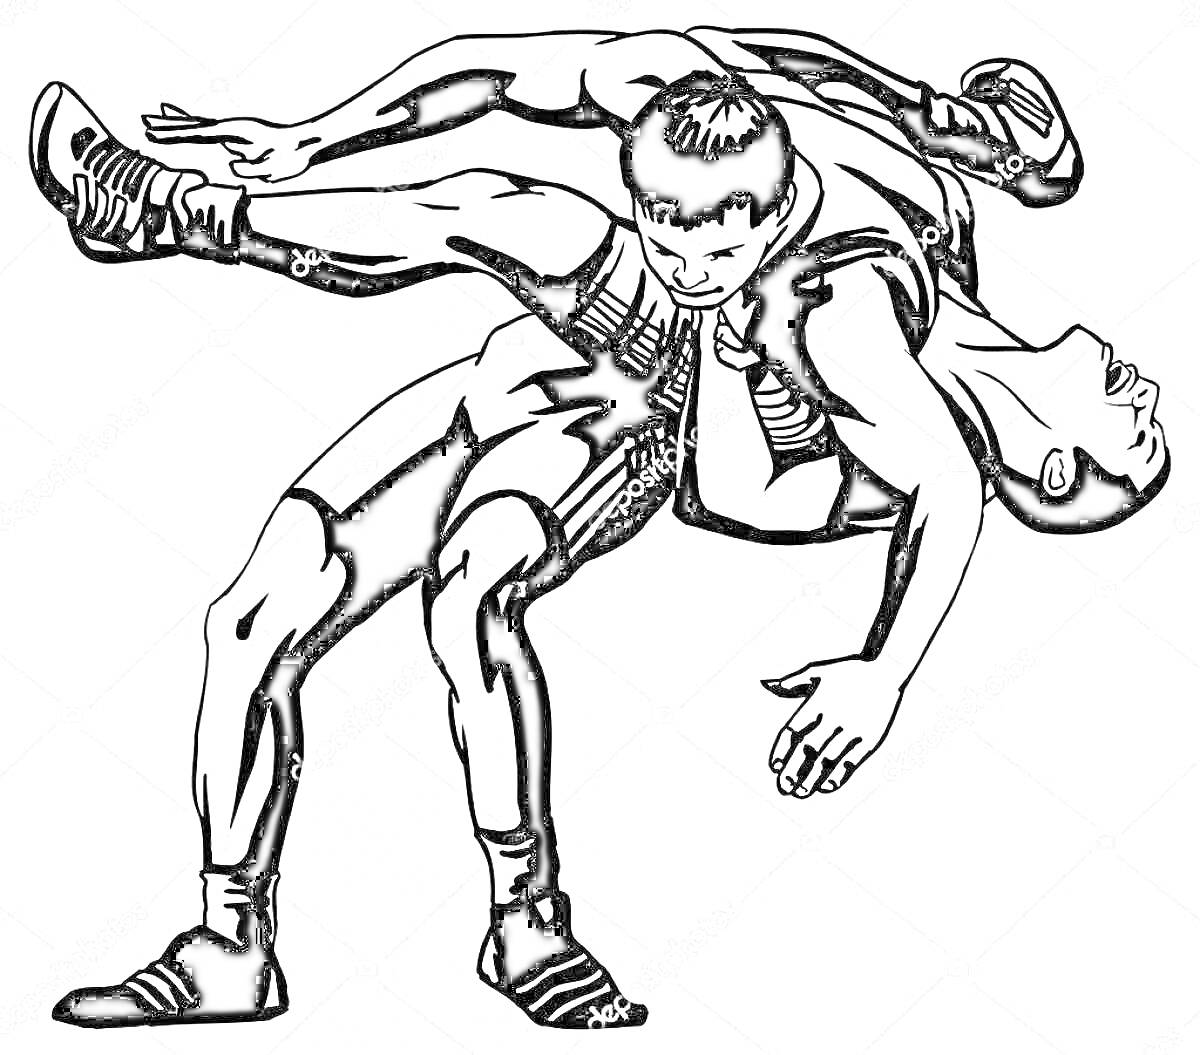 Раскраска Два борца в схватке, один борец выполняет бросок, оба в спортивных борцовках и обуви